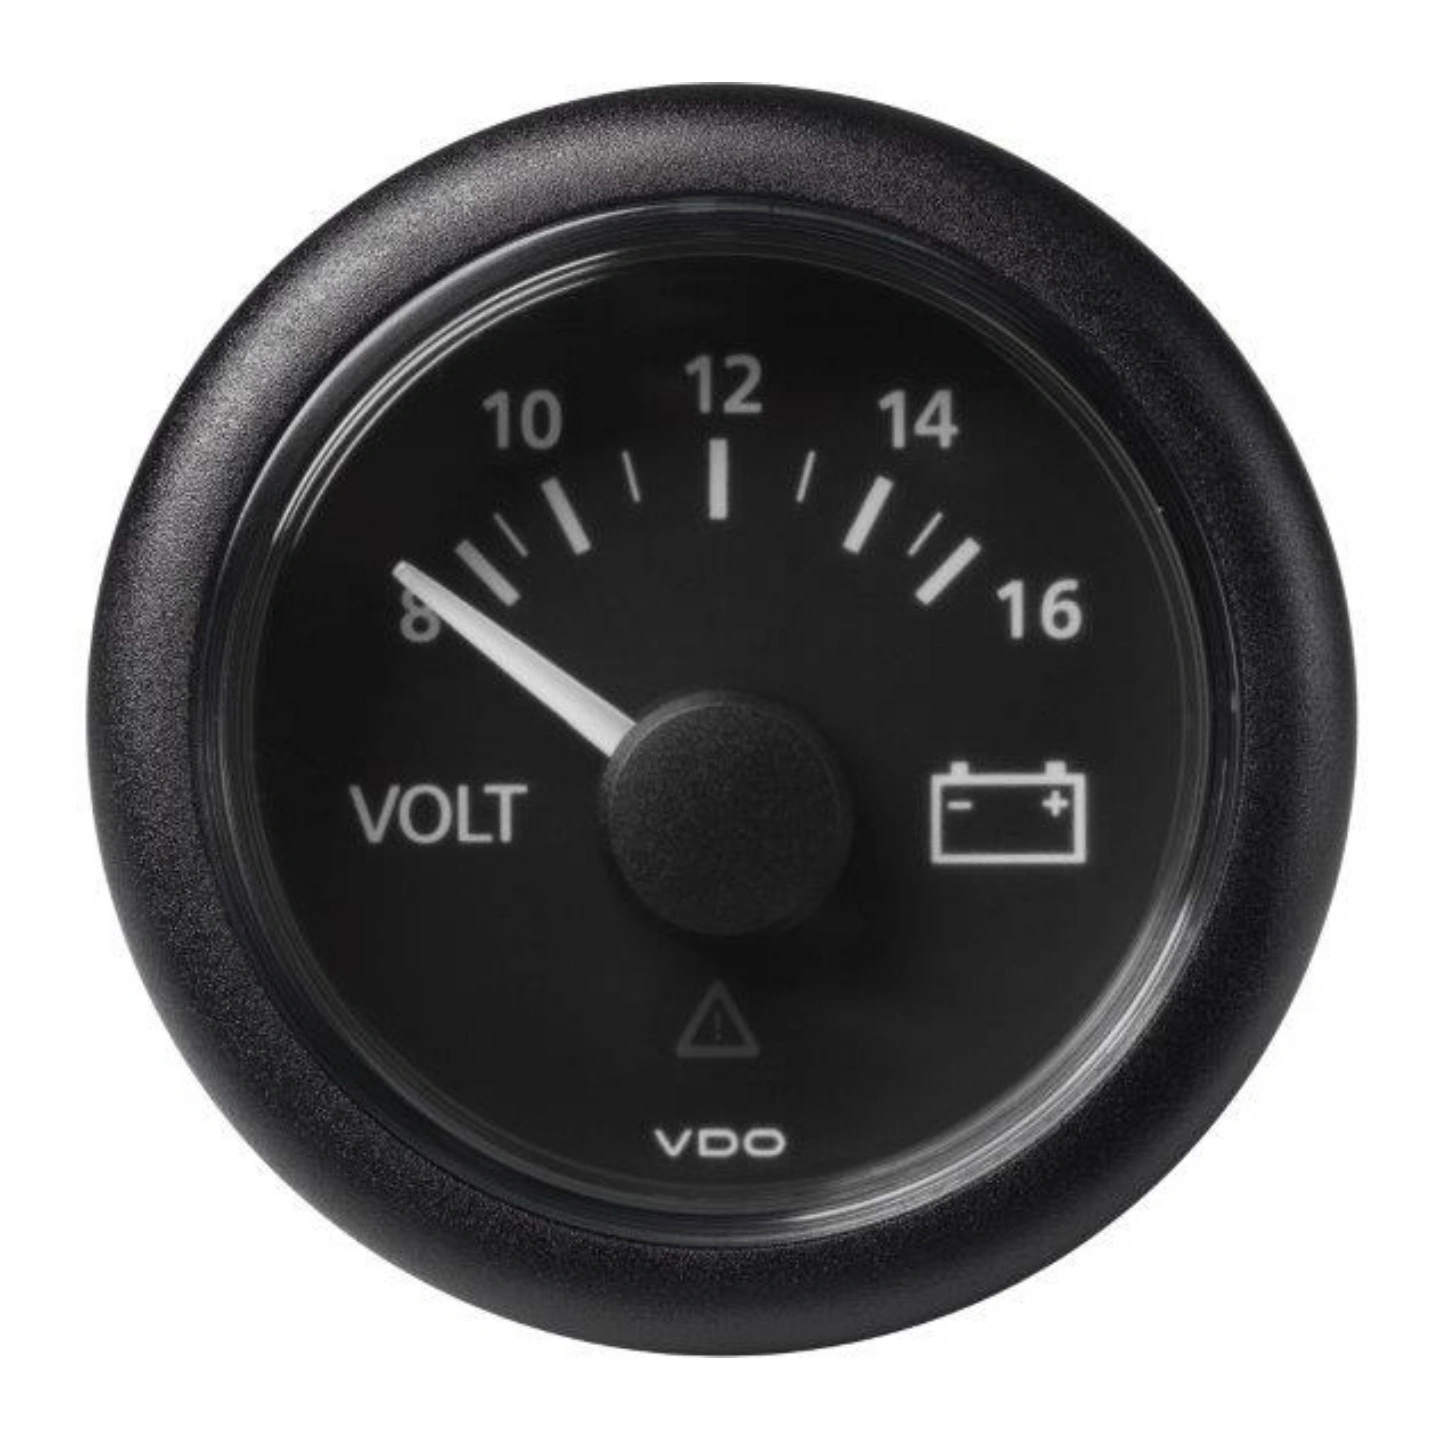 VDO Voltmeter 8-16V (12V) ViewLine - Ø52mm - sort